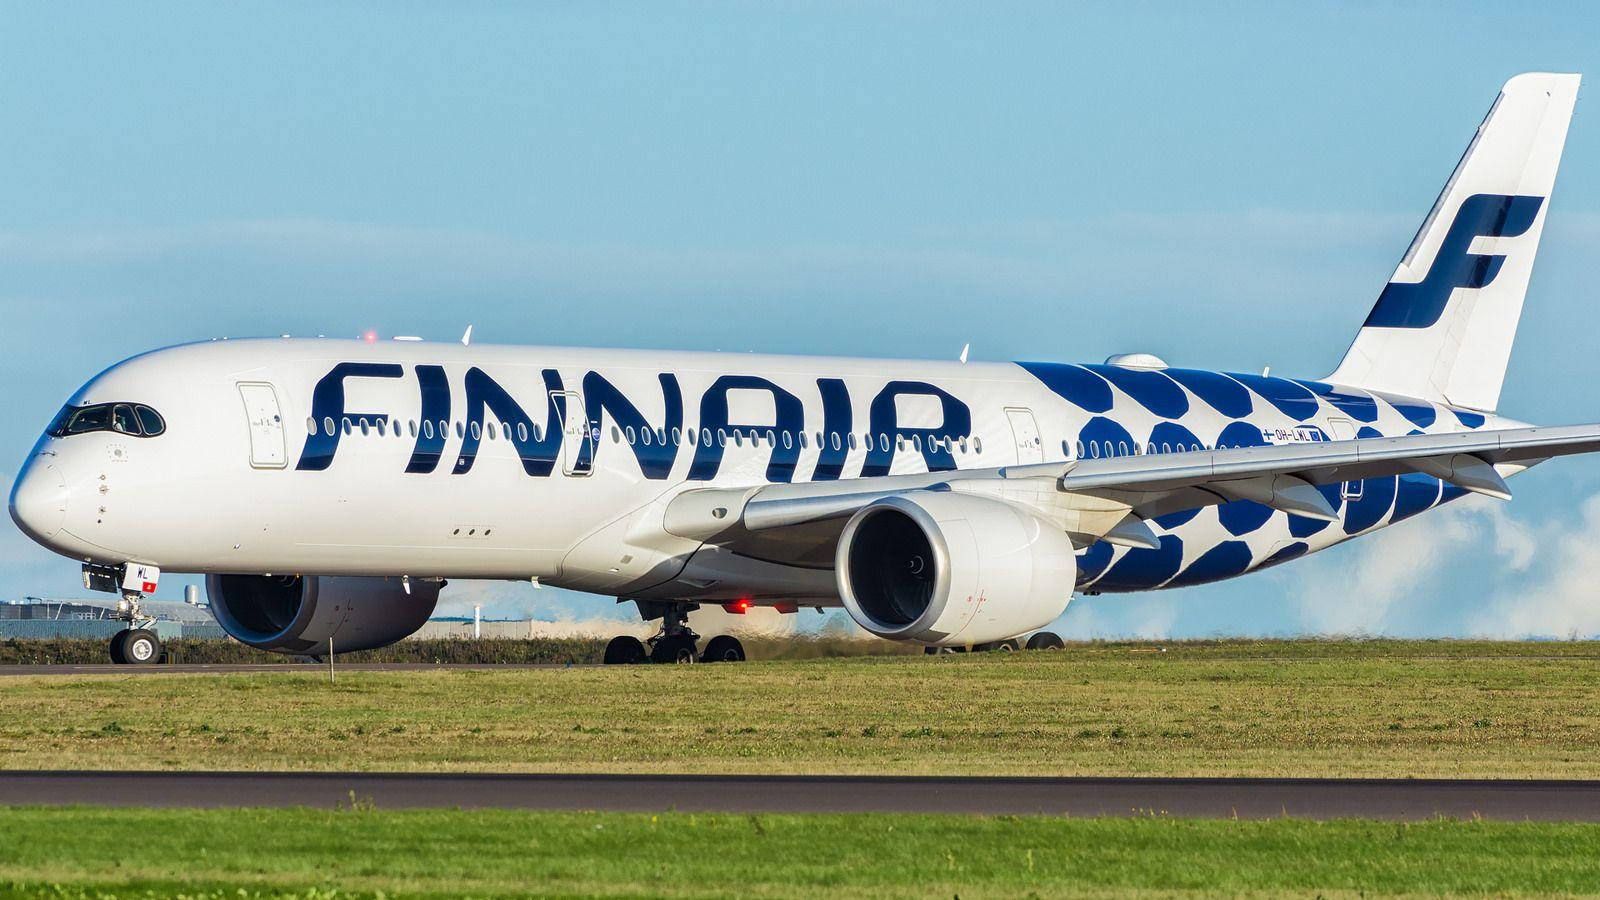 Blauerkreis Finnair Wallpaper